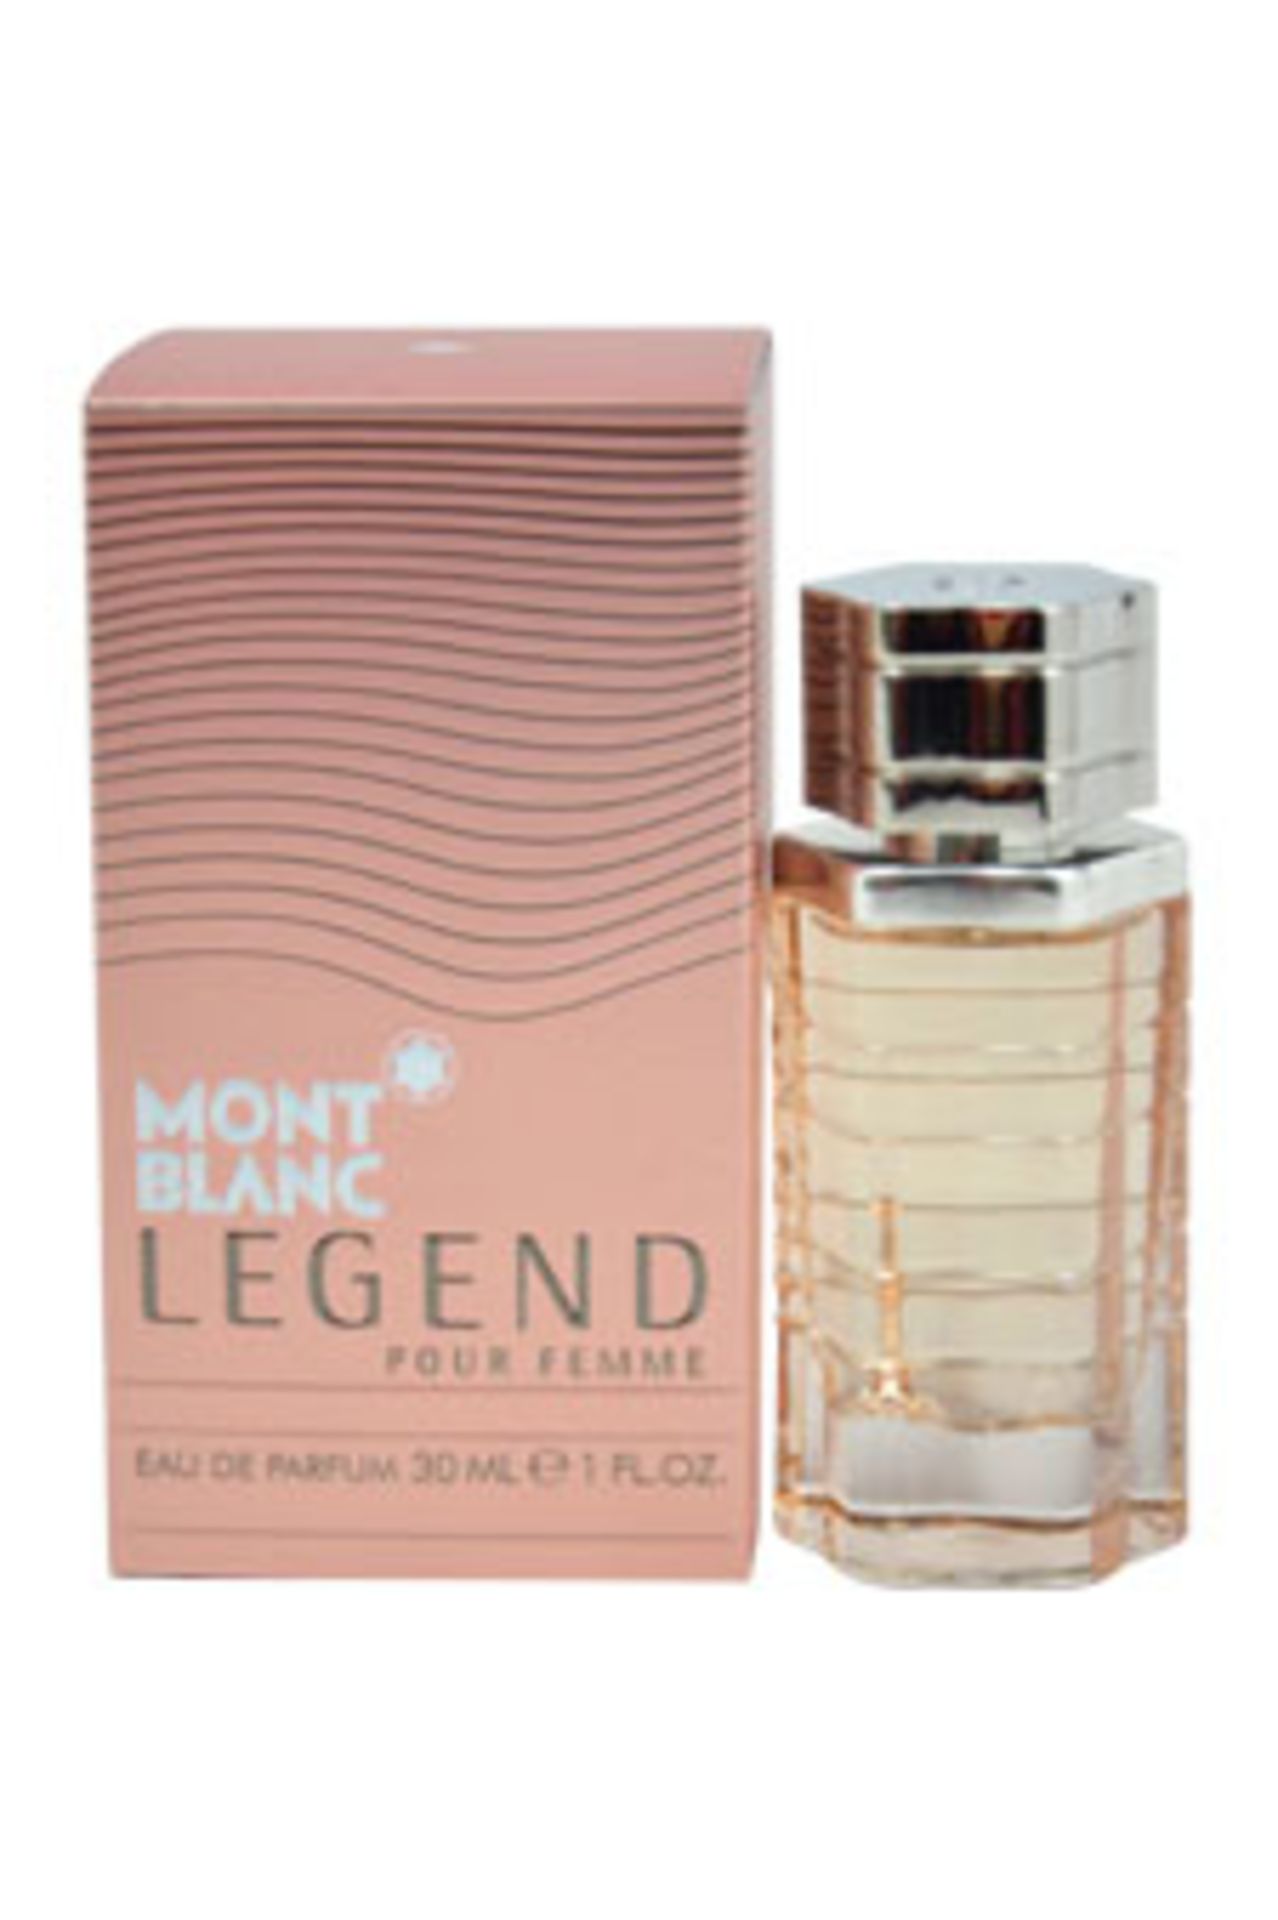 V Brand New 30ml Mont Blanc Legend Pour Femme Eau De Parfum